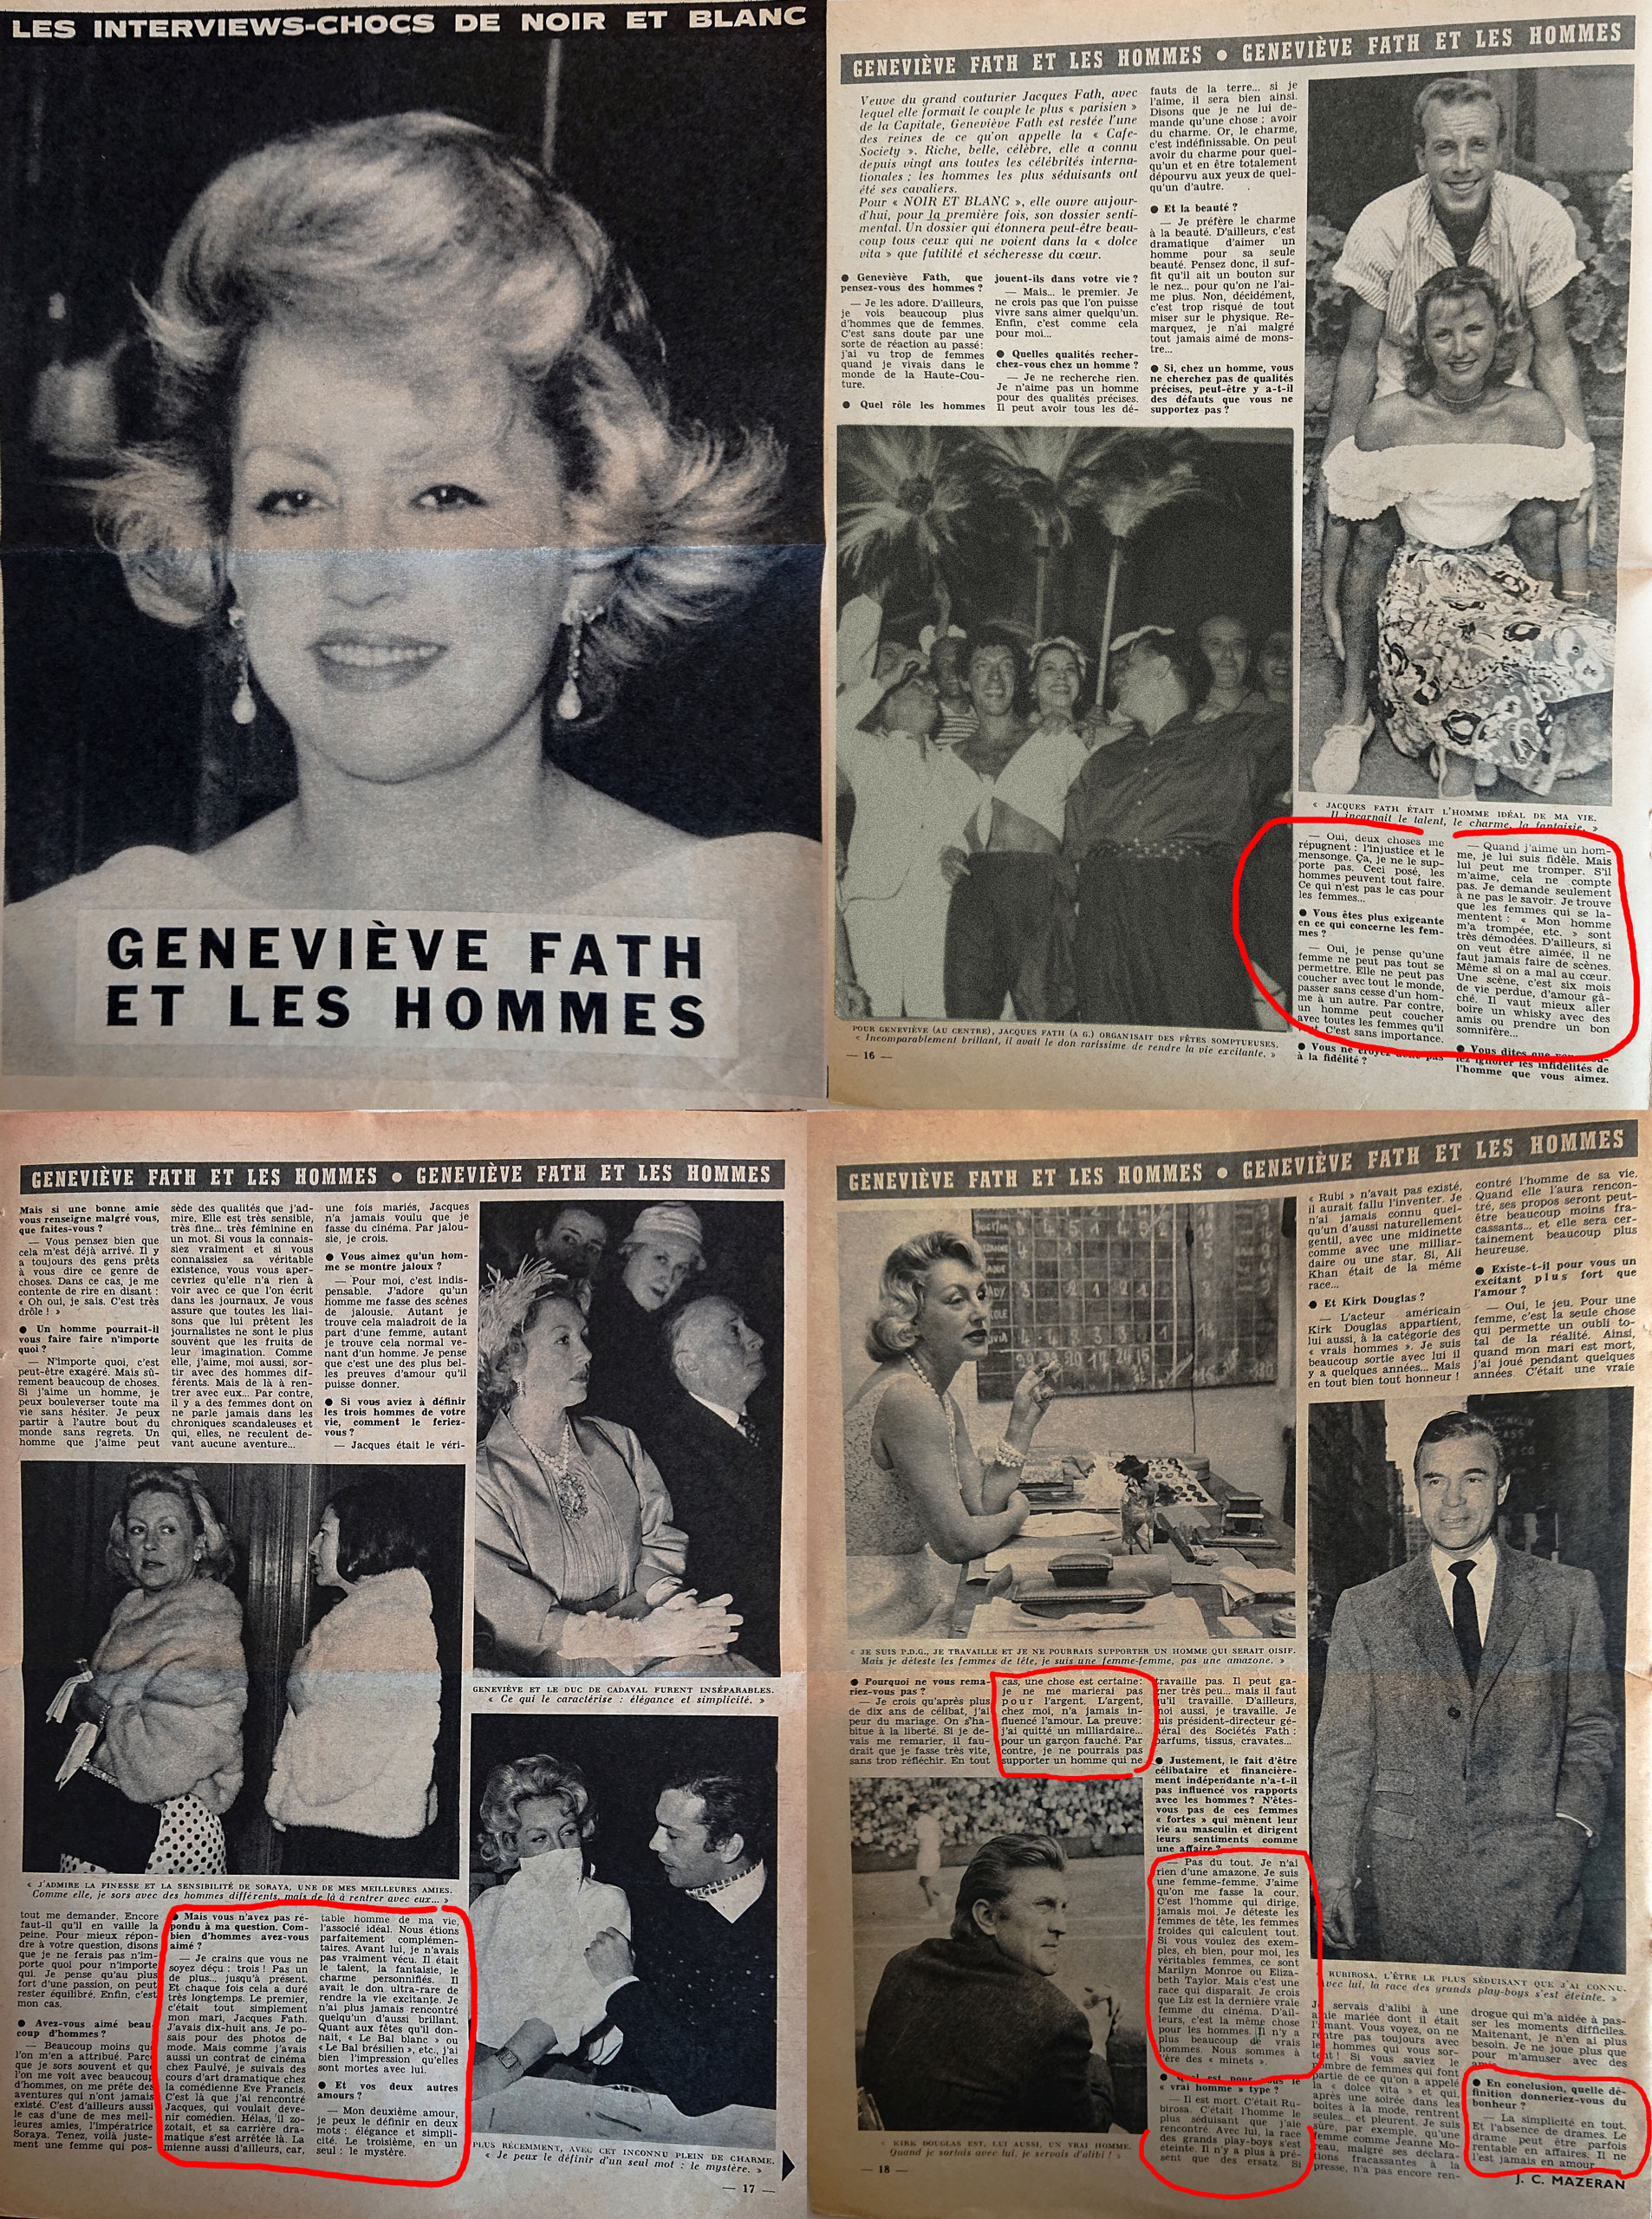 Une « success story » de la Collaboration, à comparer avec les « vérités » de Geneviève Fath 13 ans après la mort de son couturier de mari et plus de 20 ans après sa période Otto Abetz. (Revue Noir et Blanc, 7-10 mai 1967)